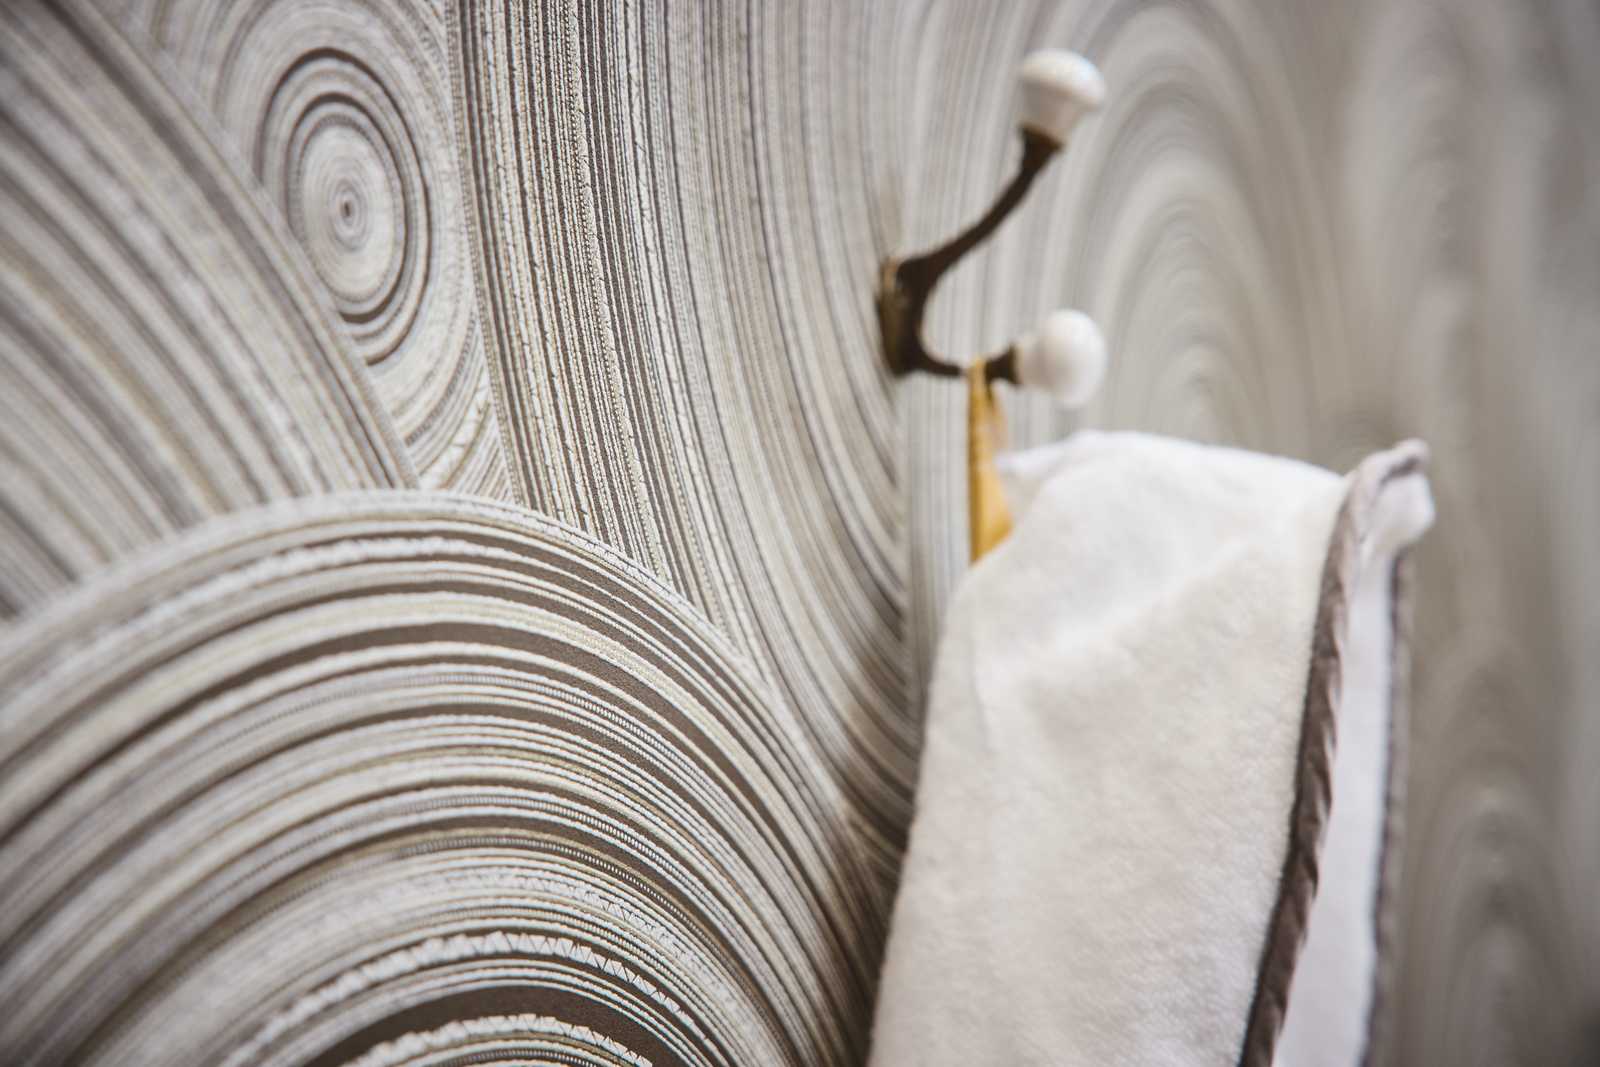             Cirkelvormig behang met ethno design met textuureffect - bruin, crème
        